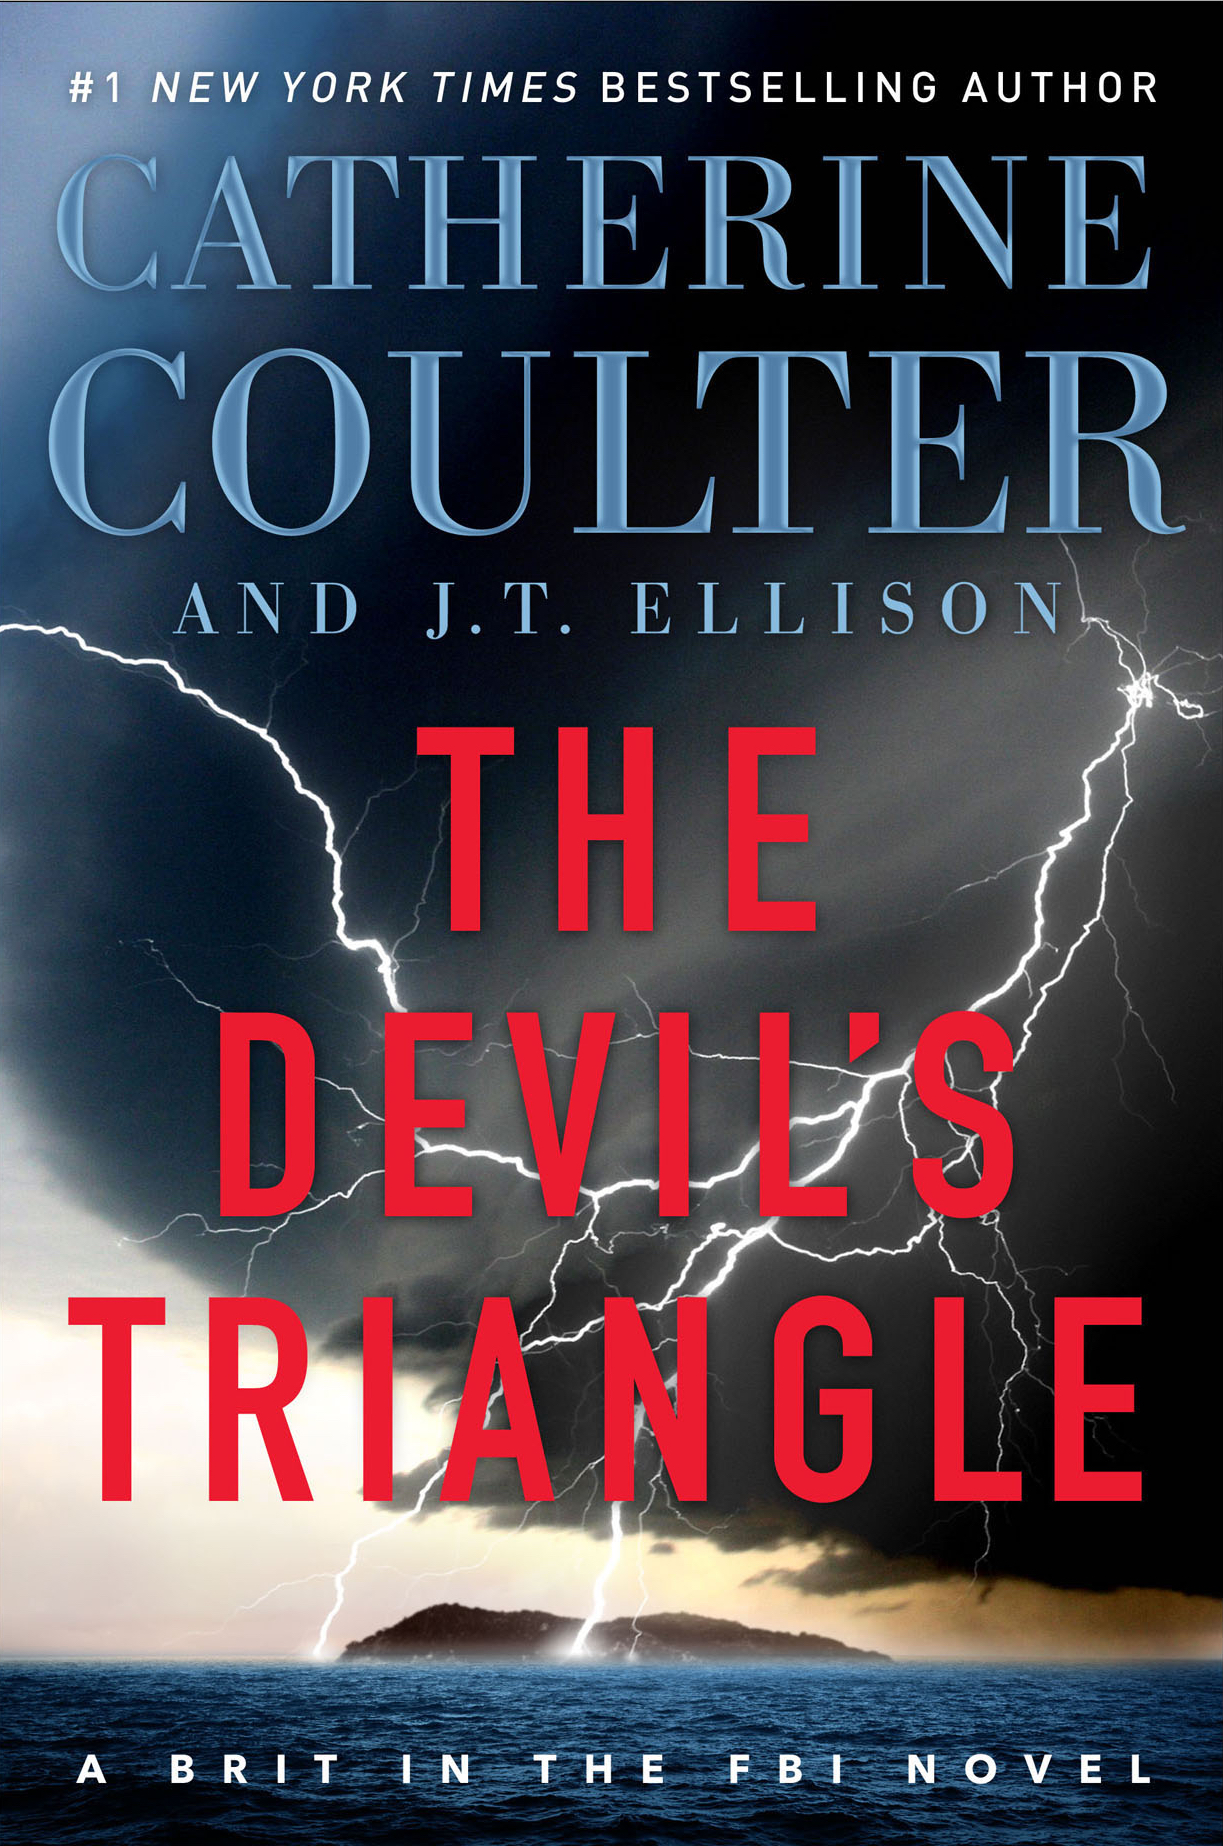 #4 - The Devil's Triangle